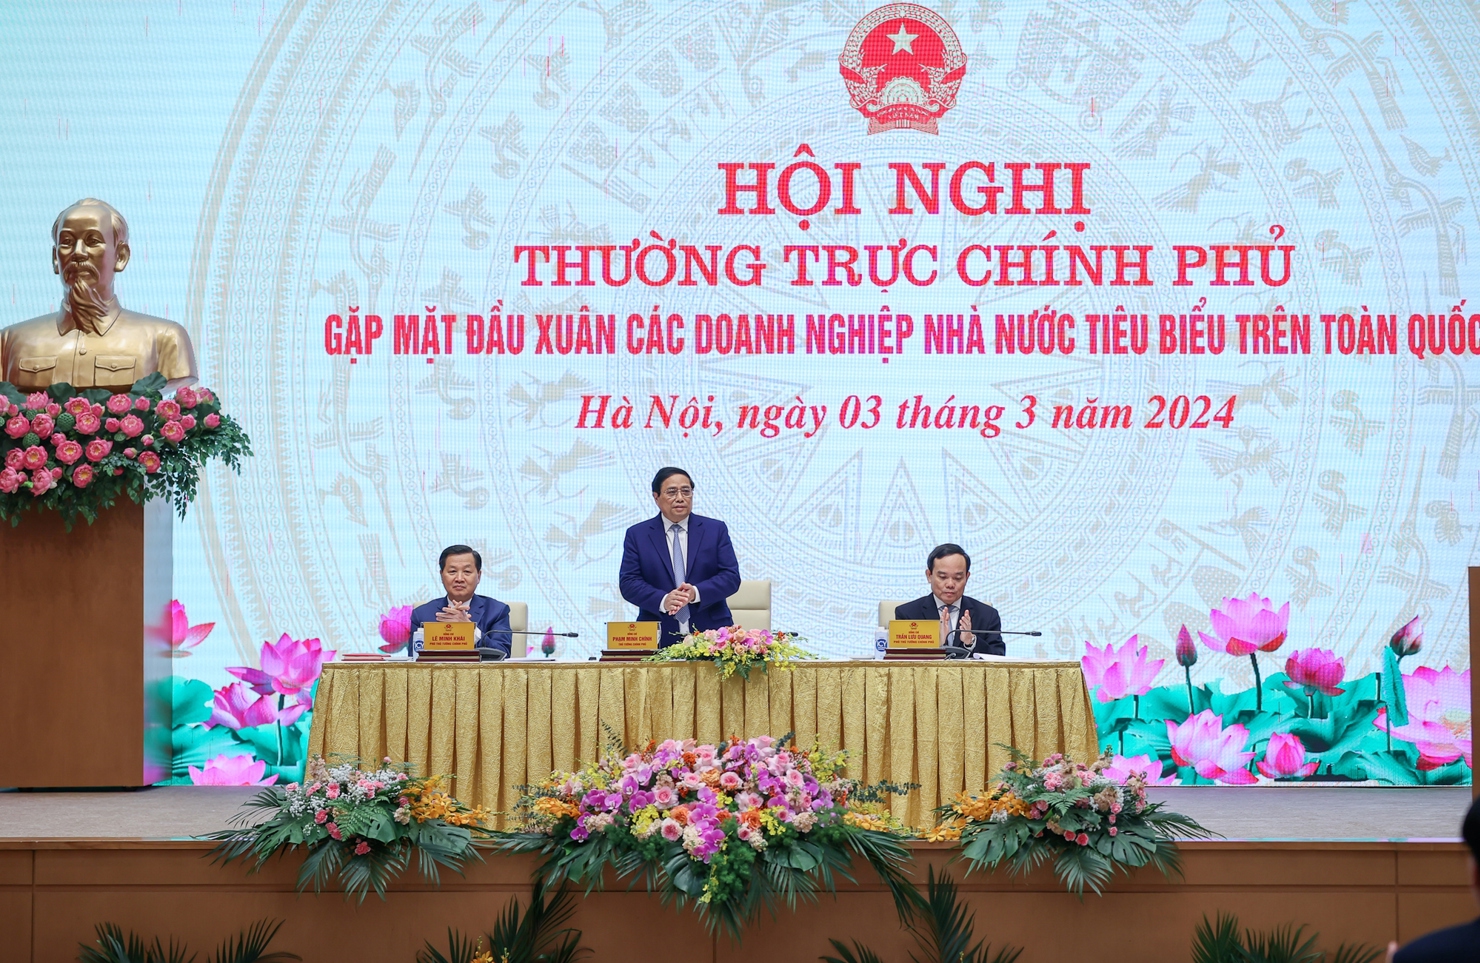 Thủ tướng Phạm Minh Chính phát biểu tại Hội nghị gặp mặt đầu xuân với các doanh nghiệp nhà nước tiêu biểu trên toàn quốc. Ảnh: VGP/Nhật Bắc.